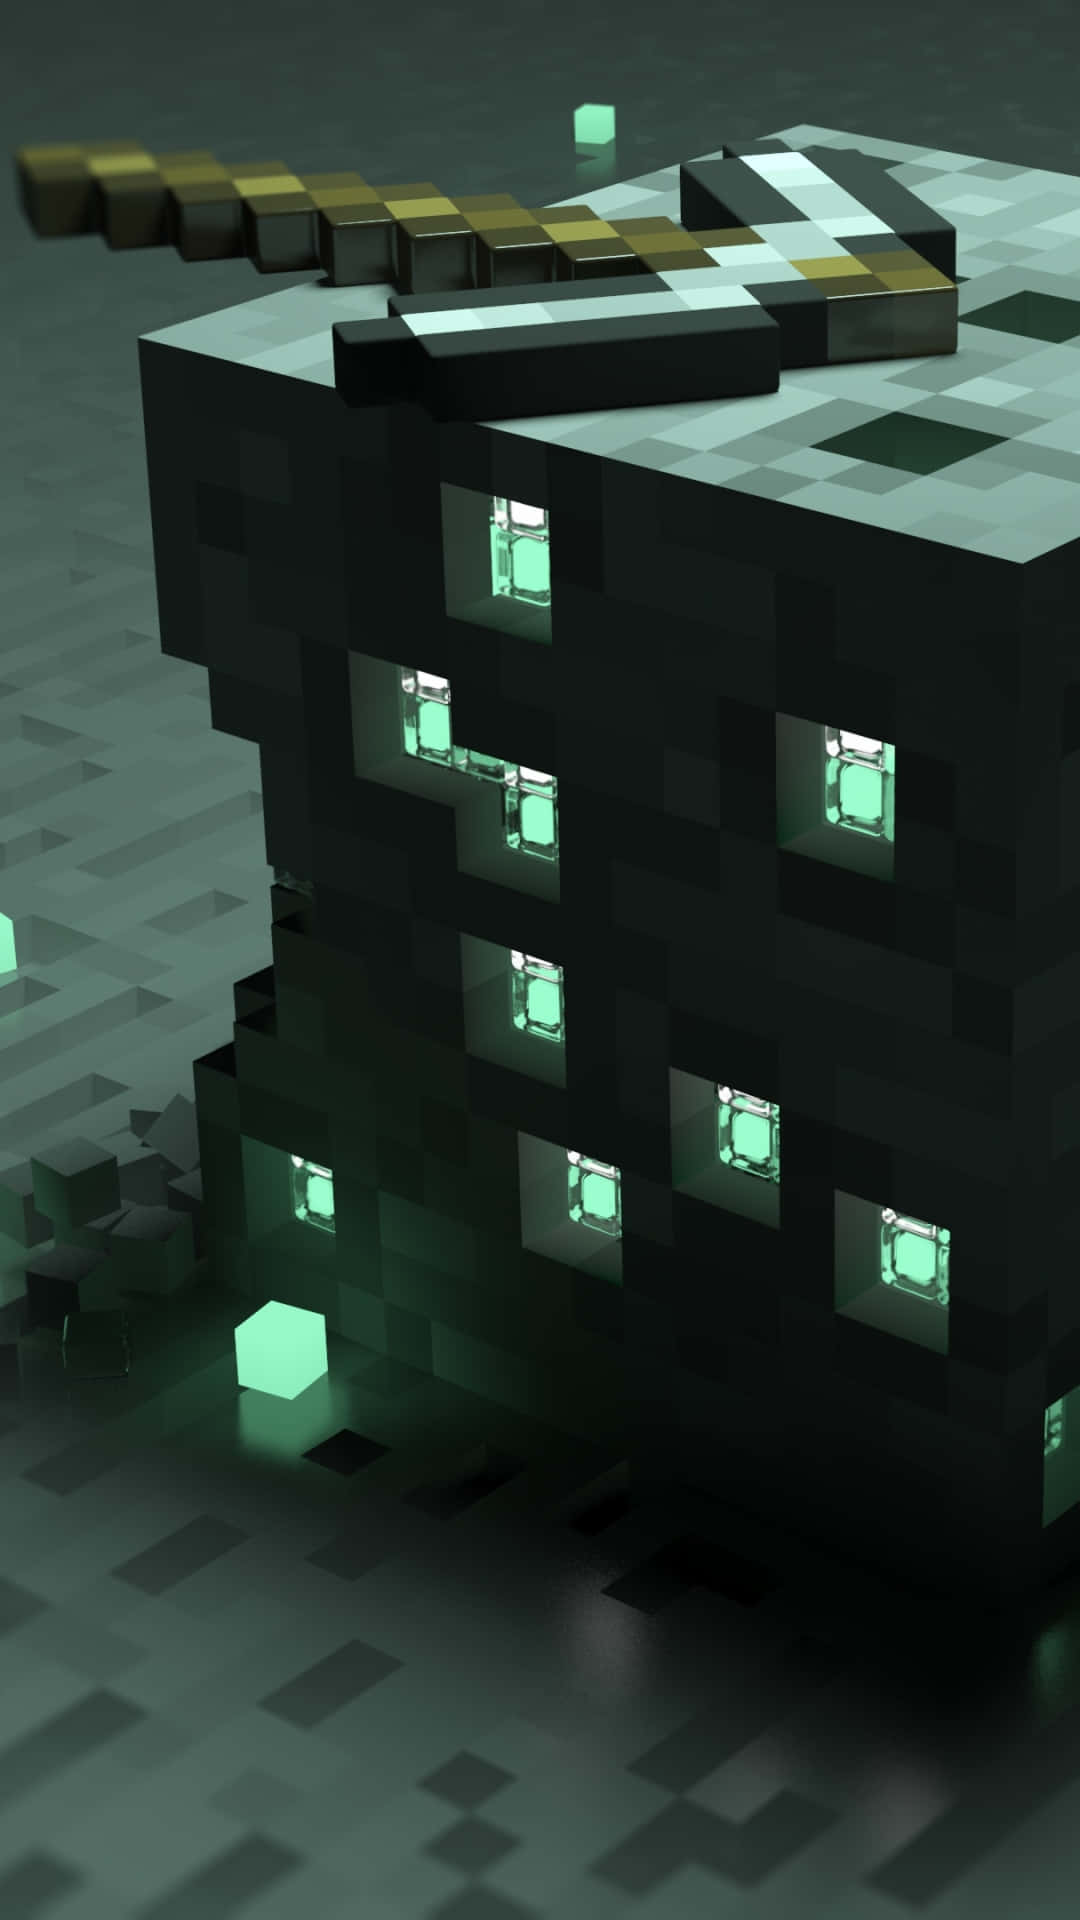 Fondode Pantalla De Minecraft En Pixel 3xl, Edificio Gris.